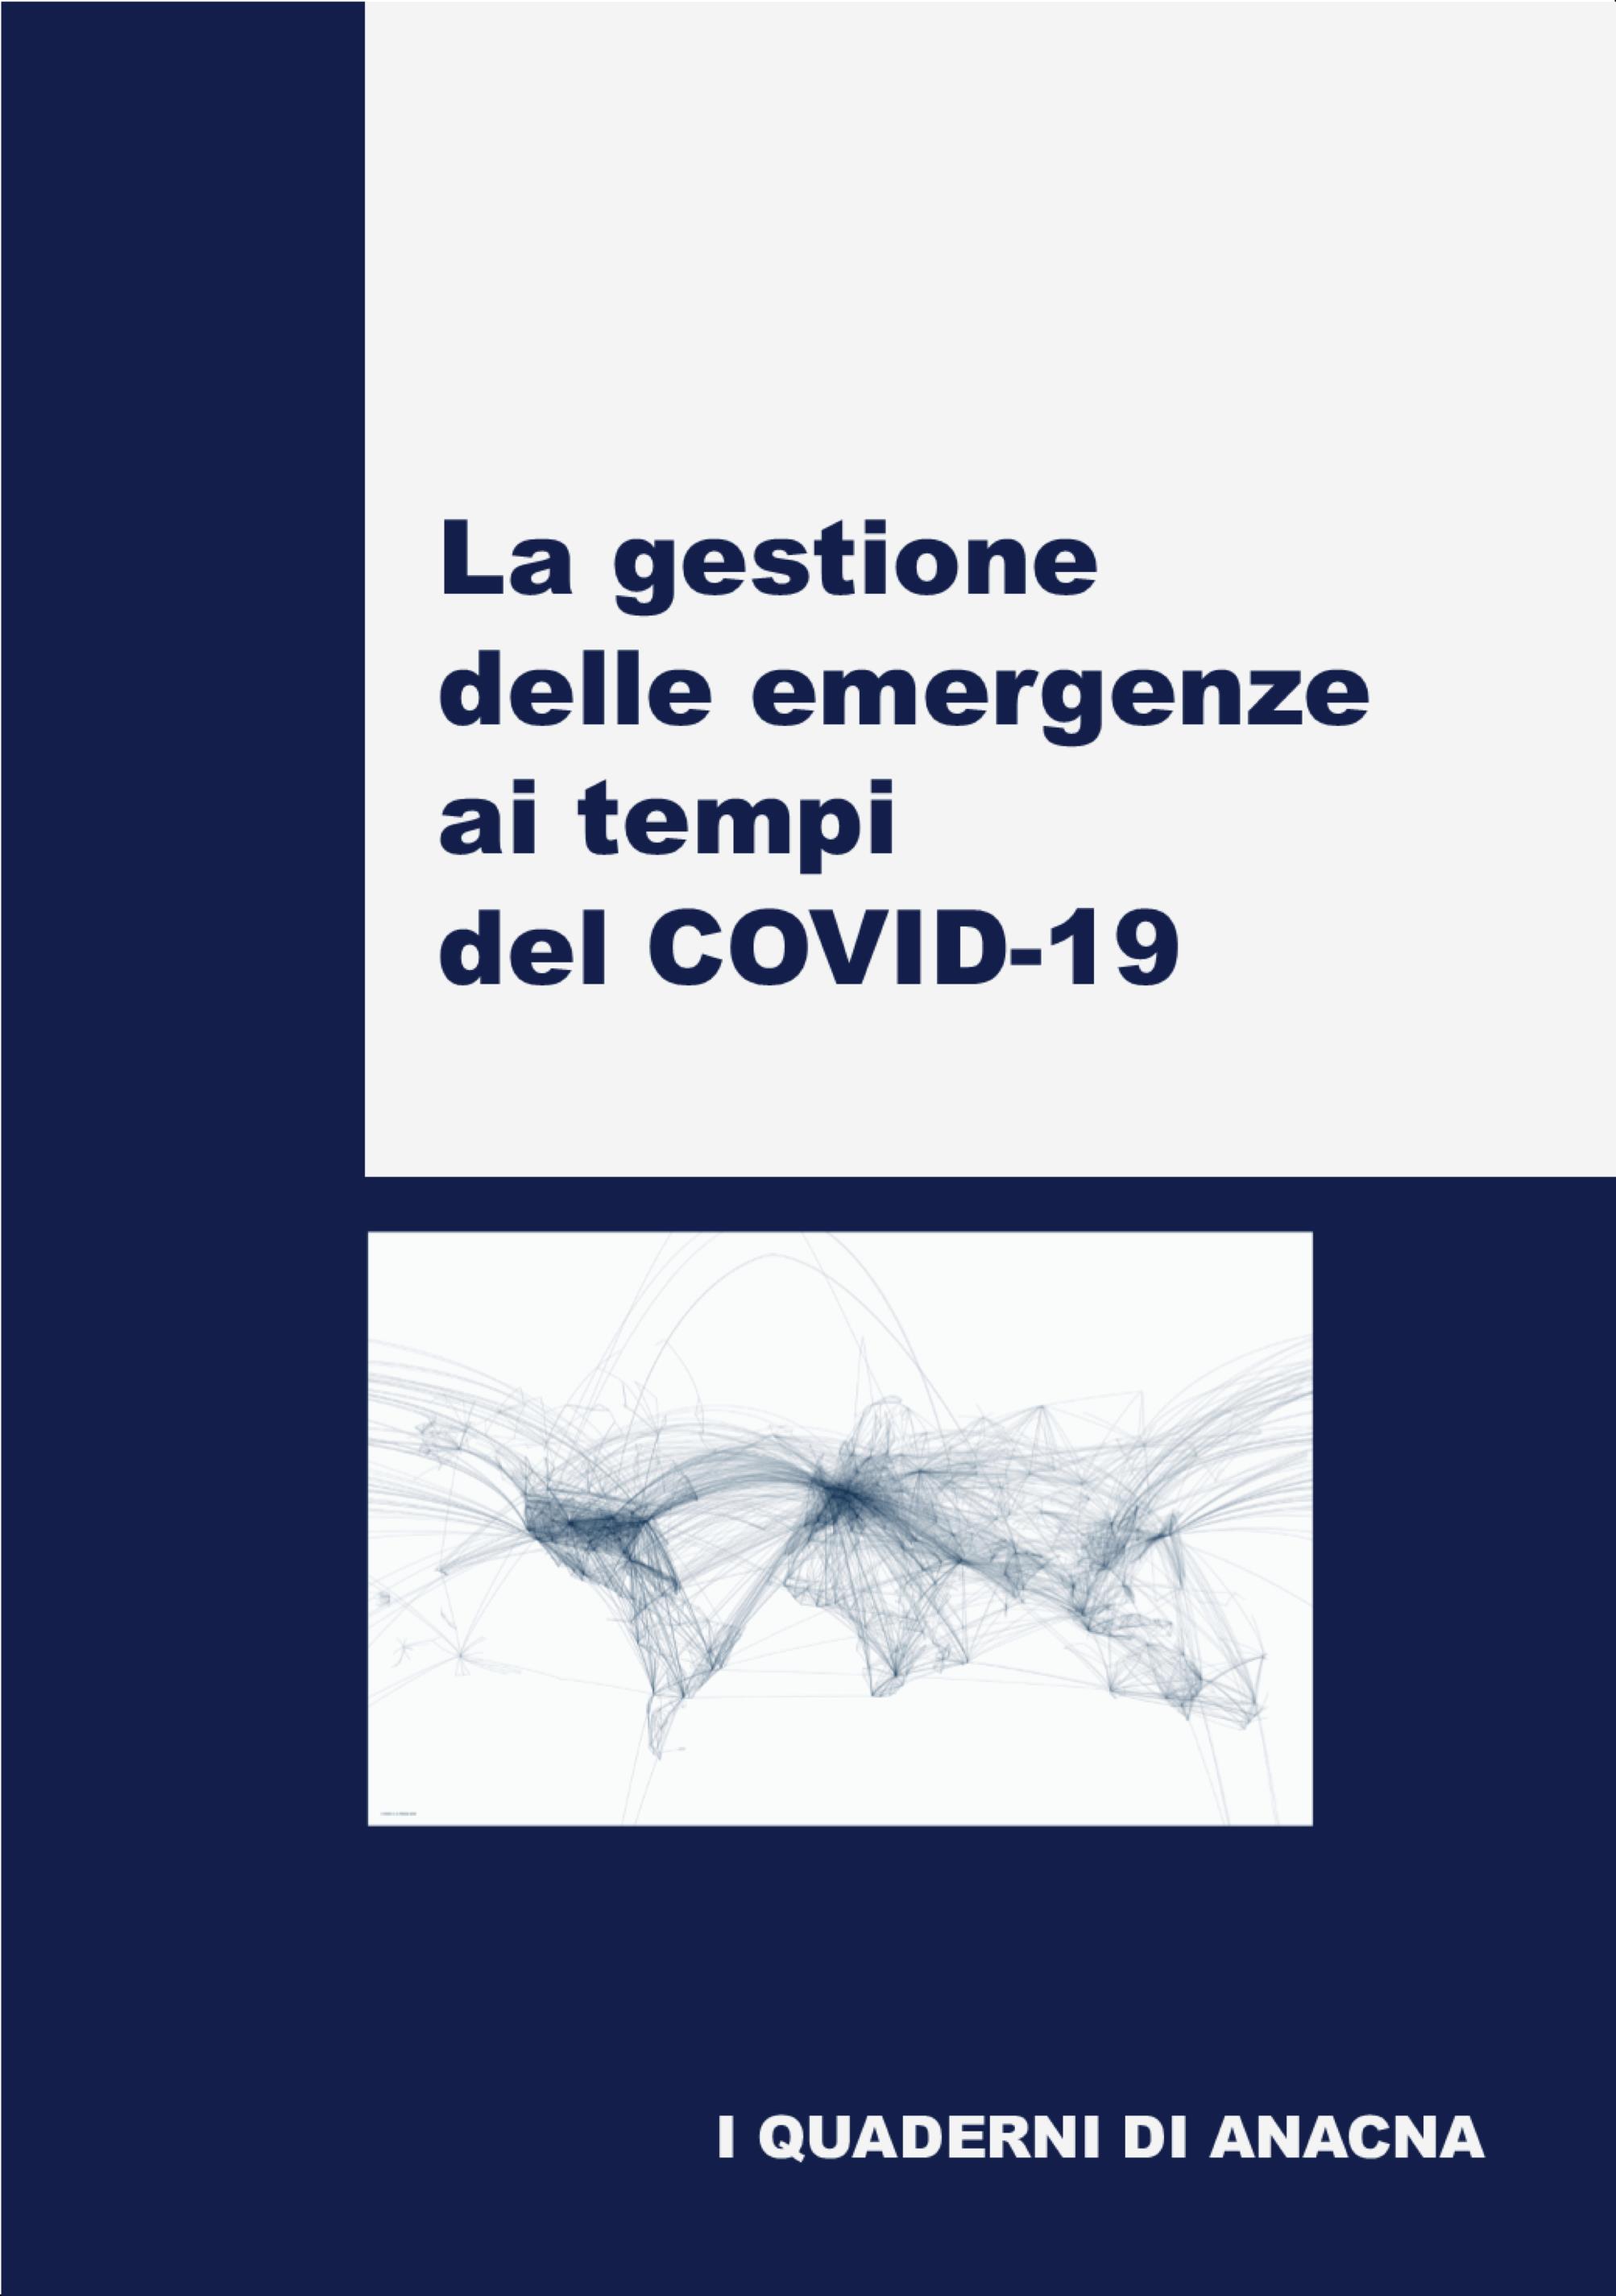 La gestione delle emergenze ai tempi del COVID-19